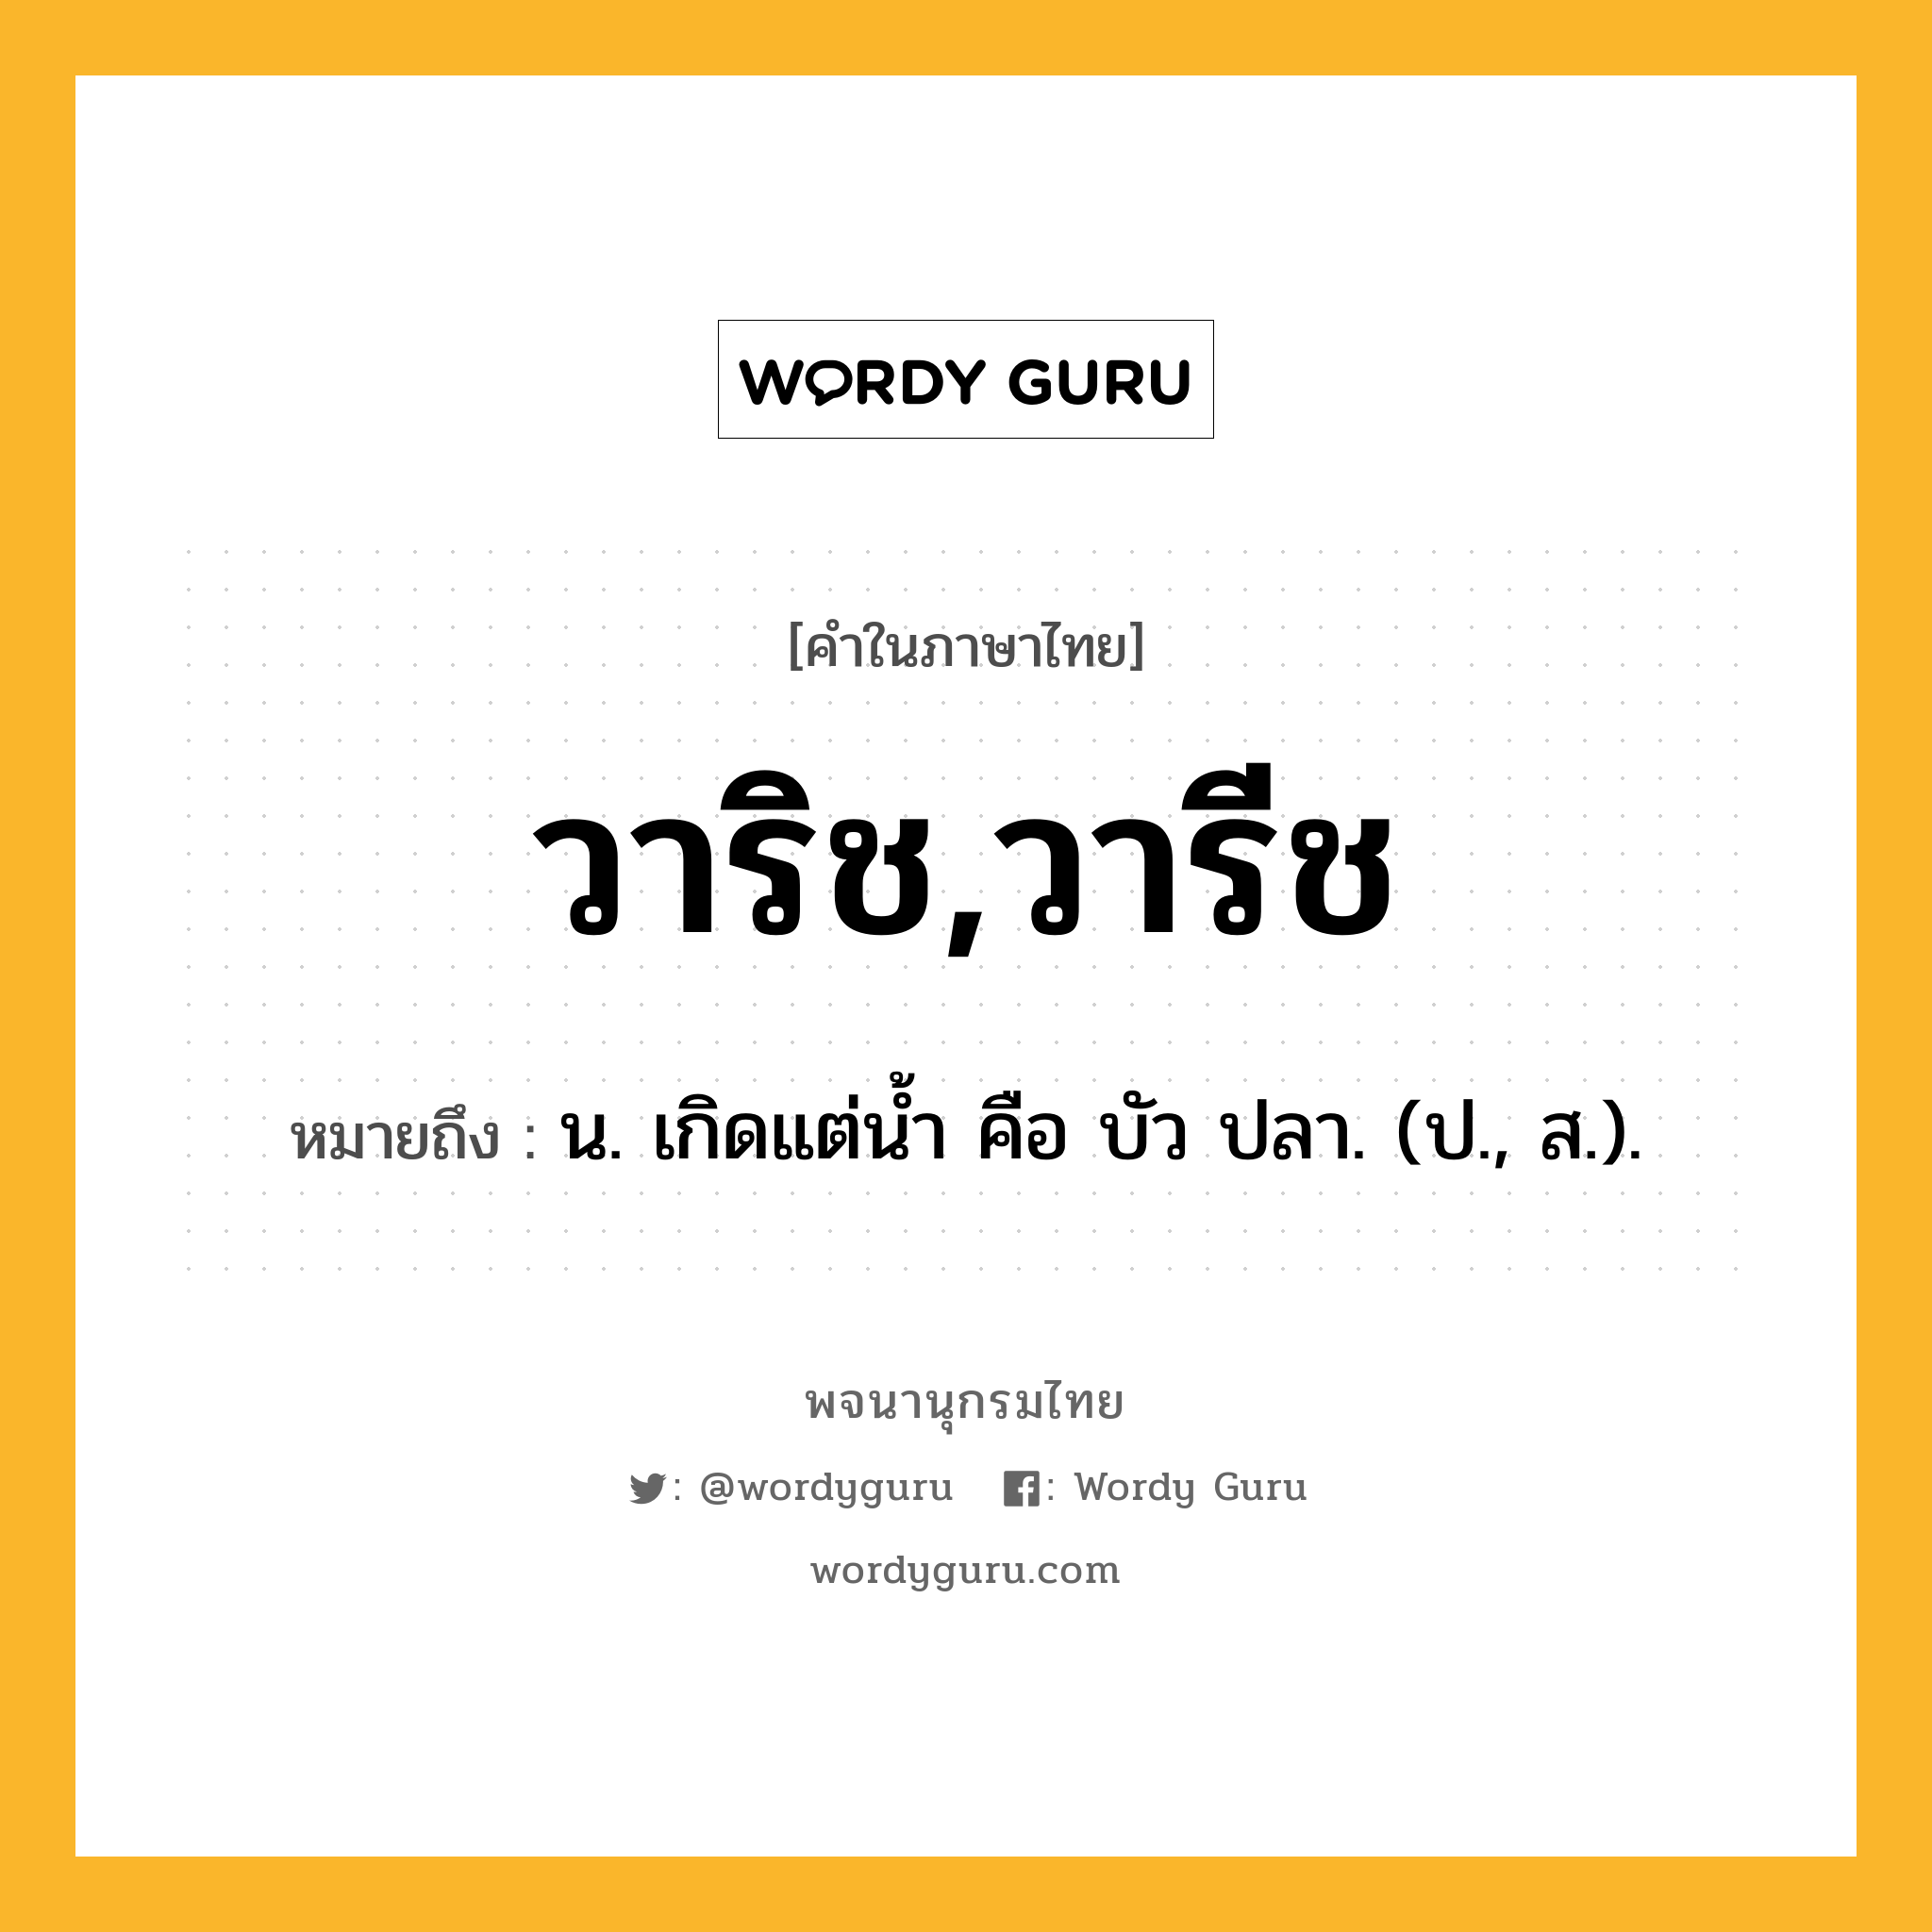 วาริช,วารีช ความหมาย หมายถึงอะไร?, คำในภาษาไทย วาริช,วารีช หมายถึง น. เกิดแต่นํ้า คือ บัว ปลา. (ป., ส.).